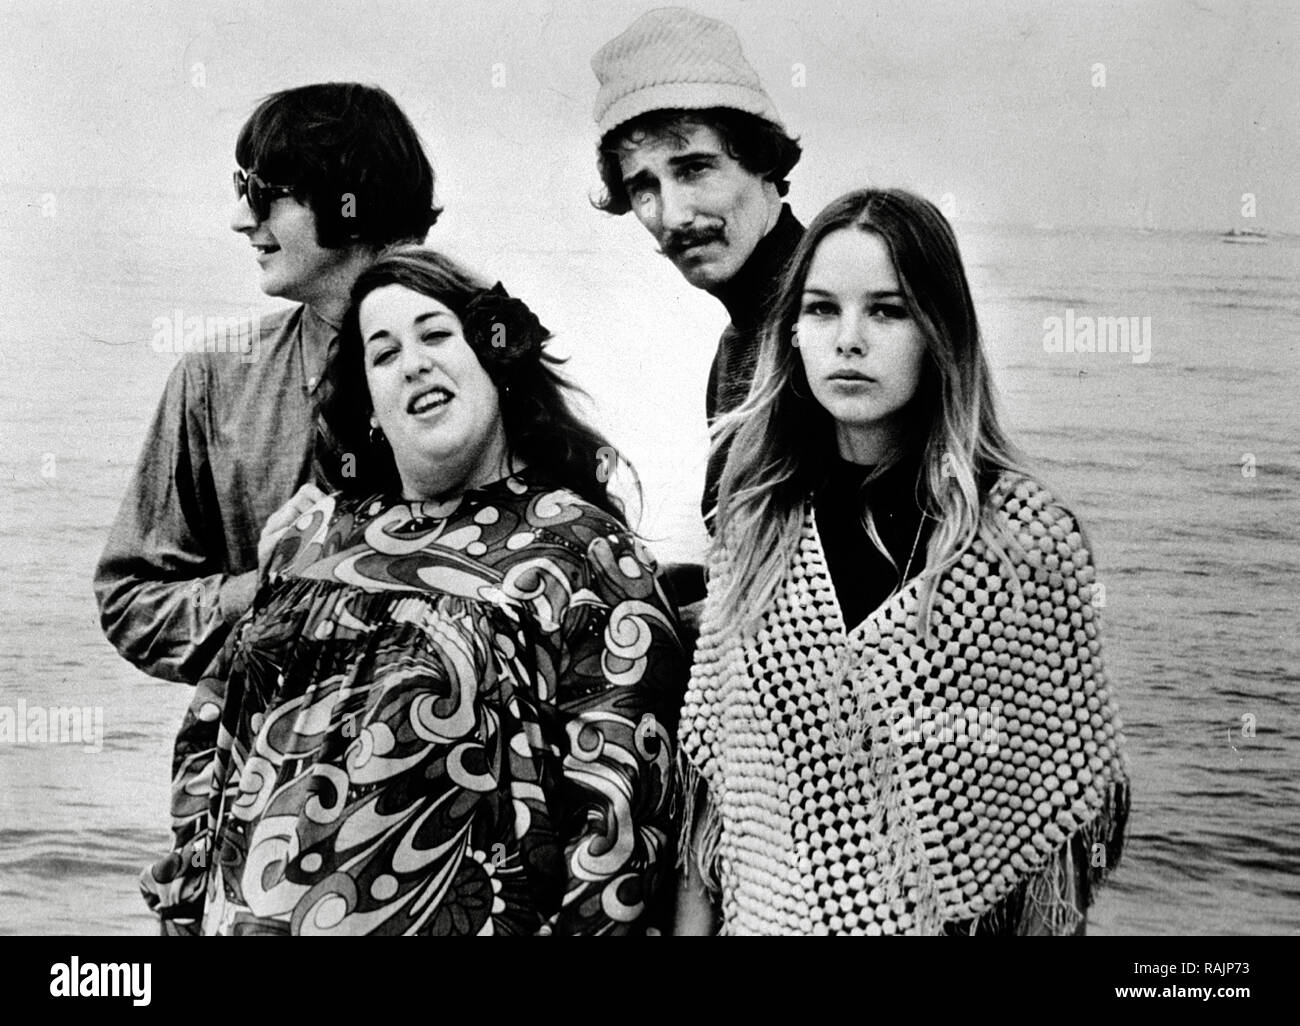 Werbung Foto von John Phillips, Michell Phillips, Mama Cass Elliot, Denny Doherty (die Mamas und Papas), ca. 1969 Datei Referenz # 33636 1000 THA Stockfoto